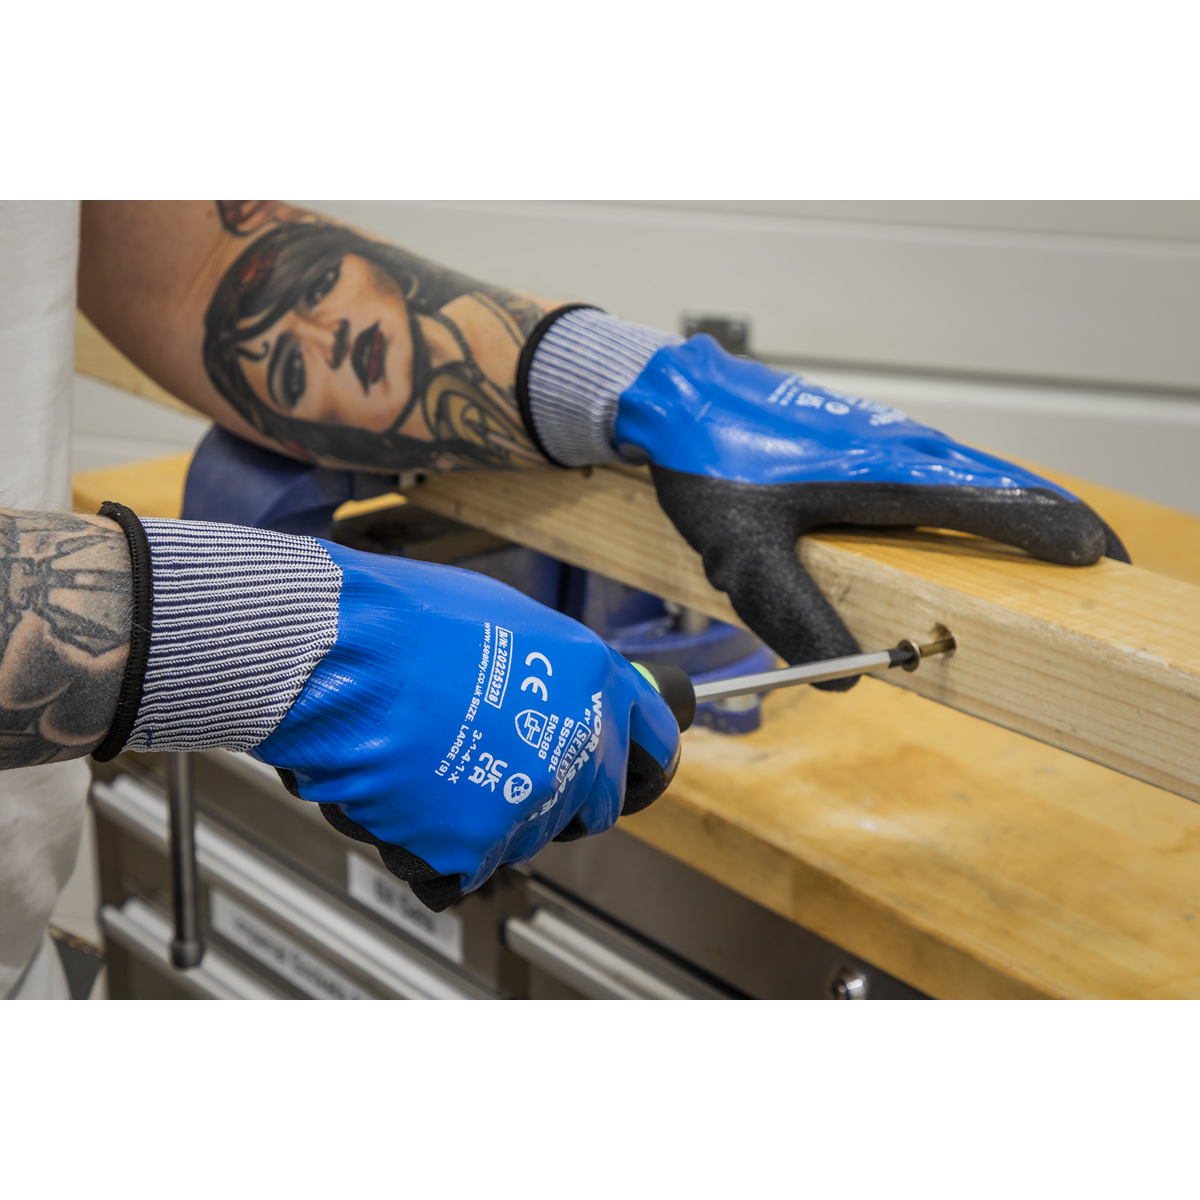 Waterproof Latex Gloves – Pair